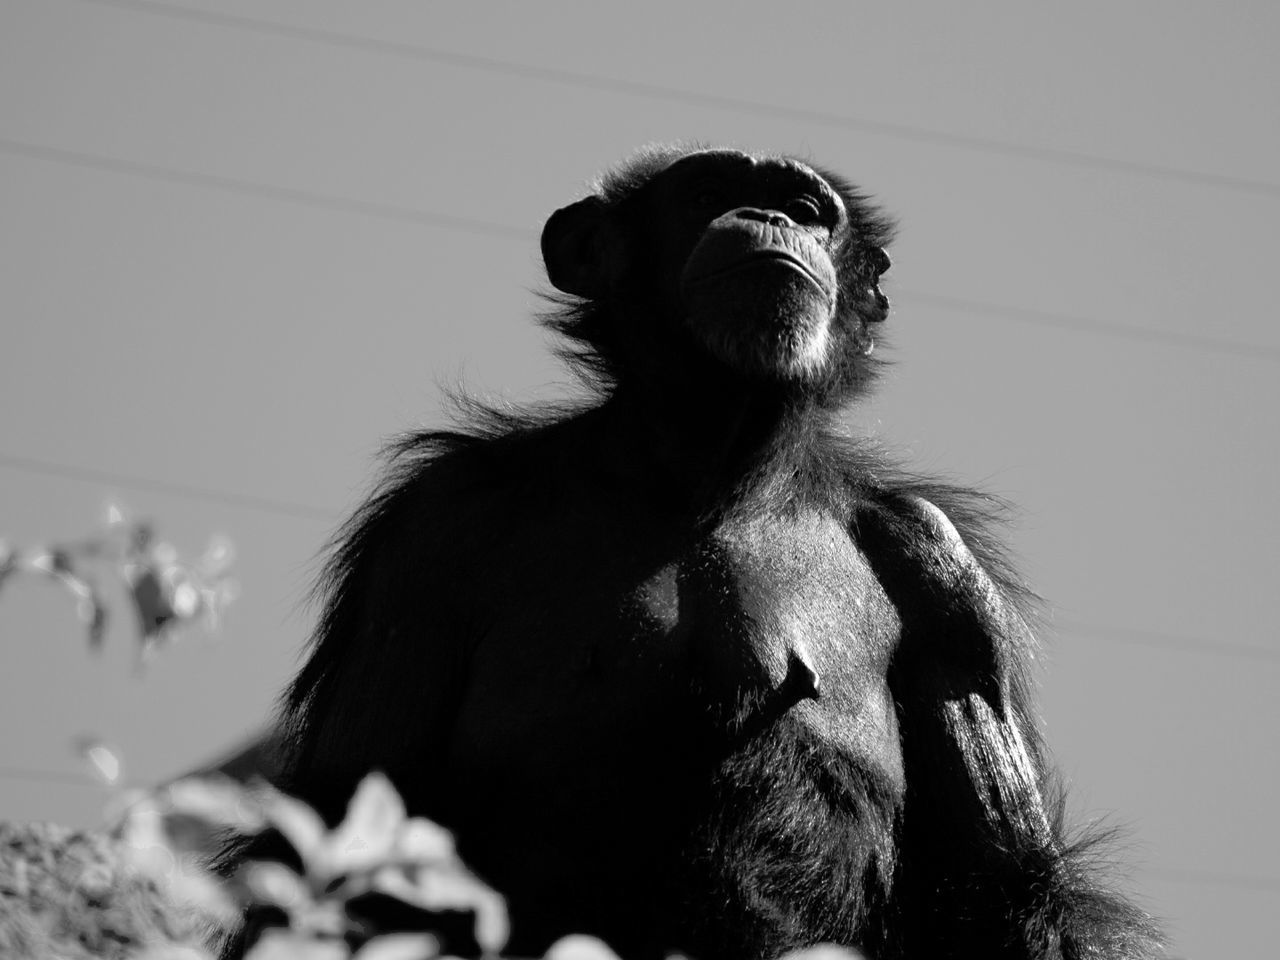 Shimpanzee monkey